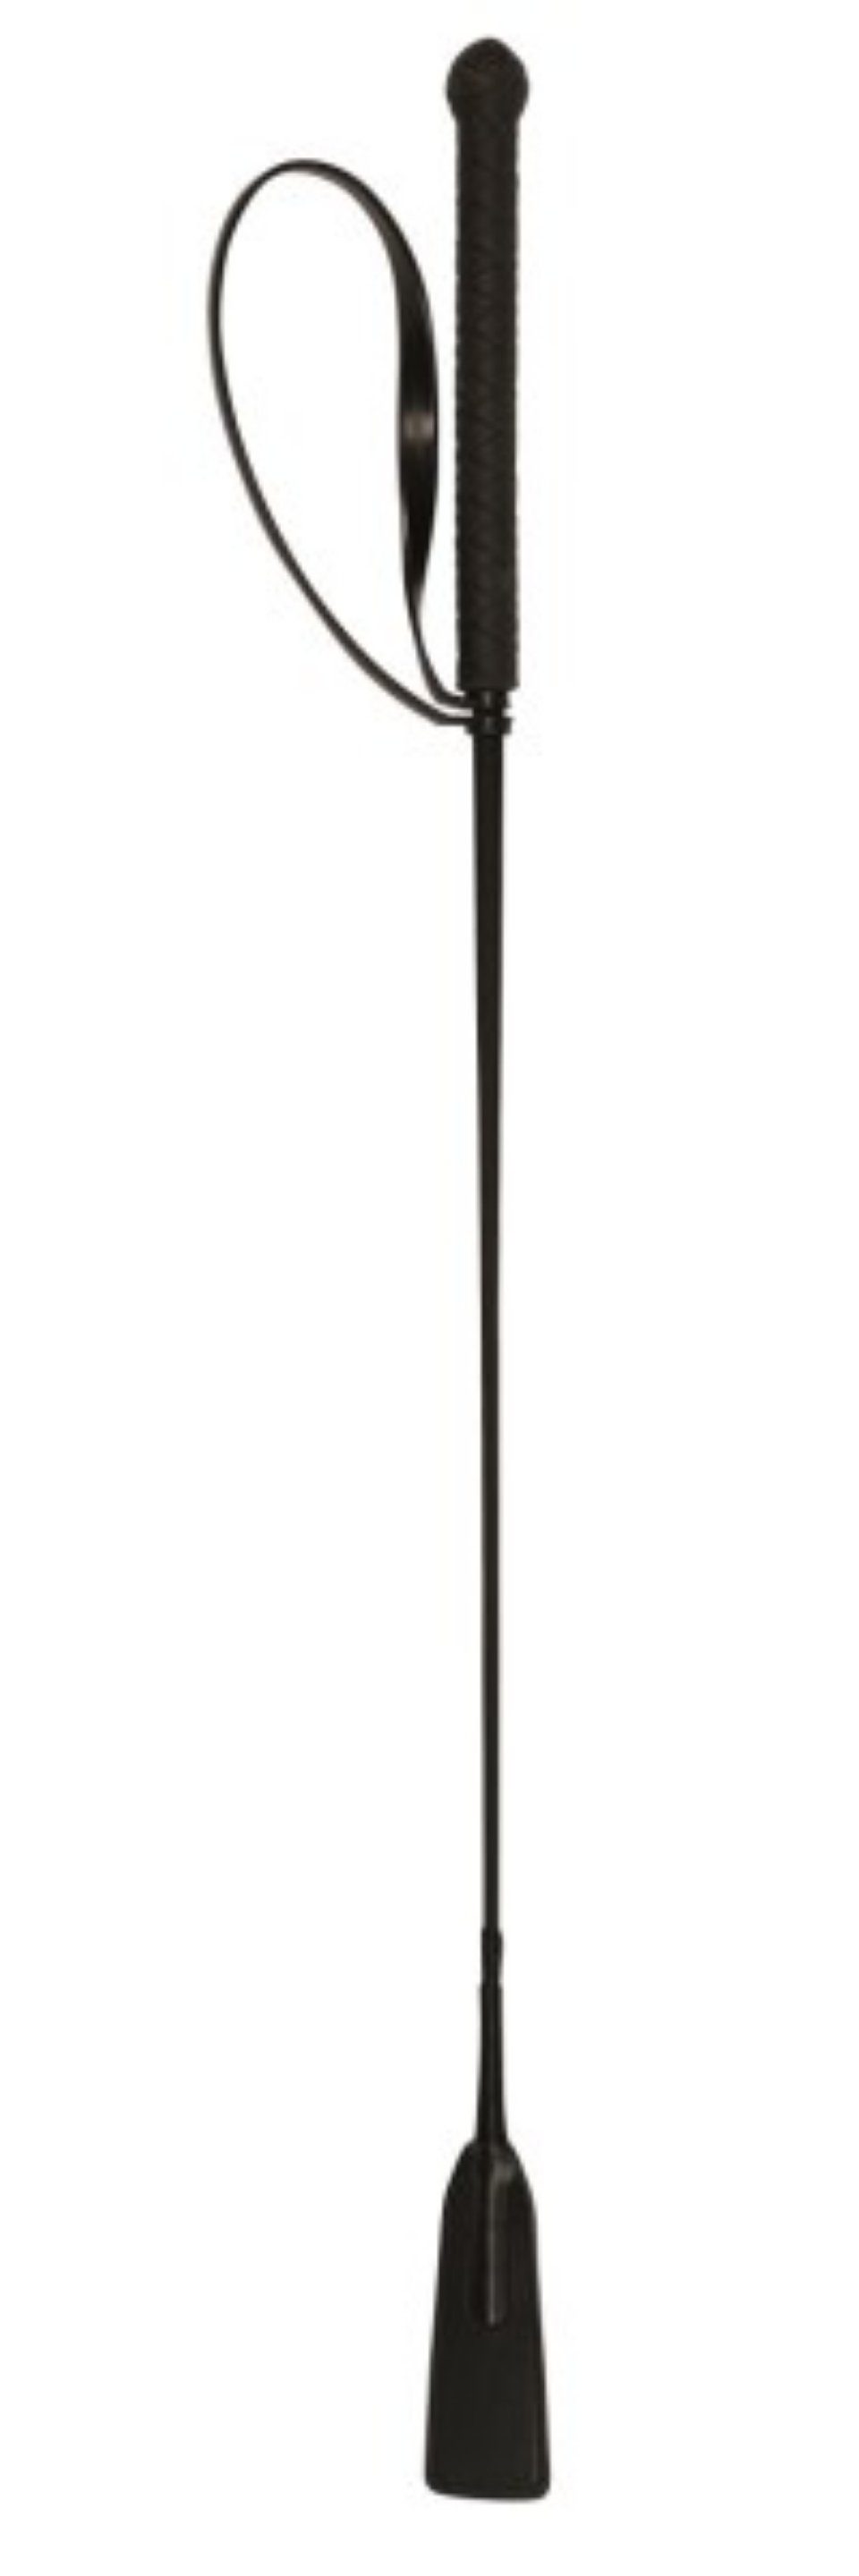 Kerbl Springgerte mit 1-tlg. Klatsche Springgerte 32364, cm 65 schwarz